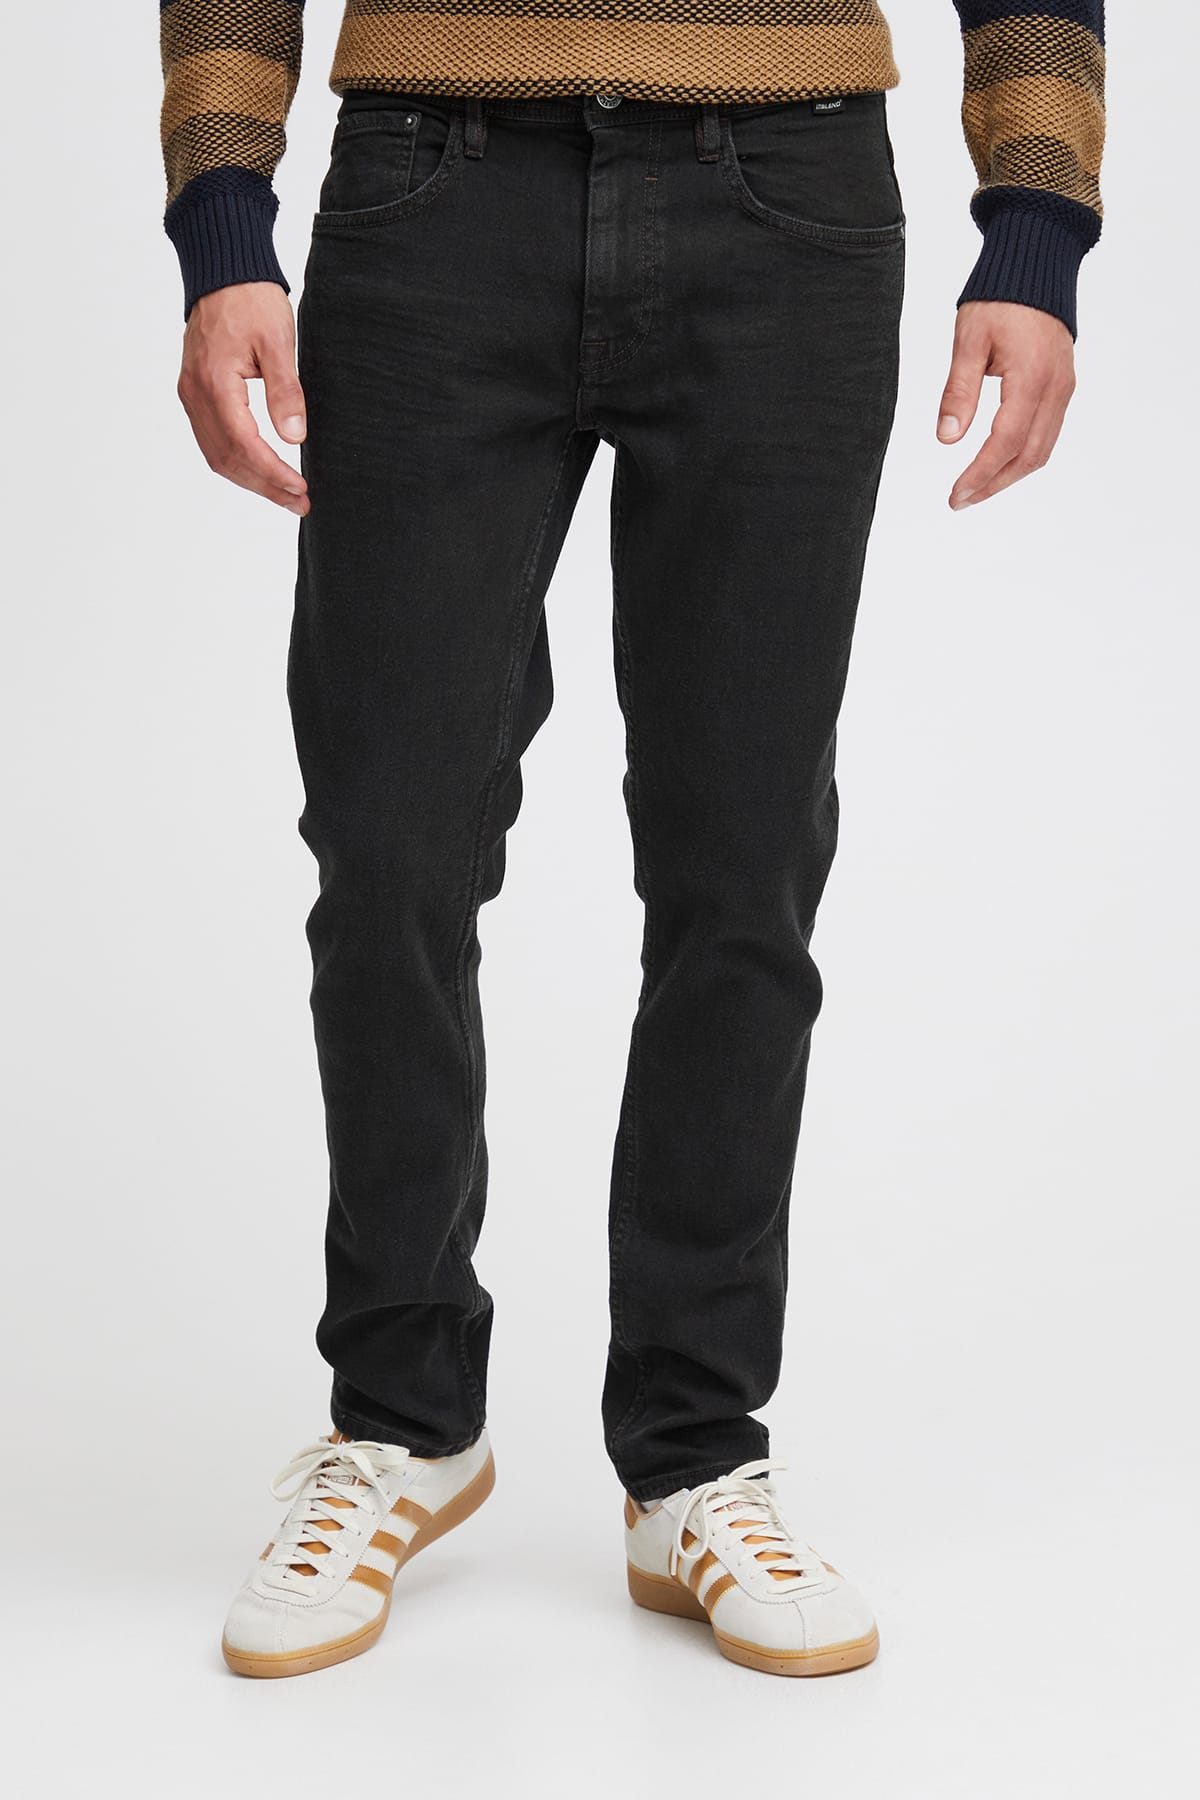 Jeans Twister fit - PP NOOS Denim unwashed black Jeans Blend 